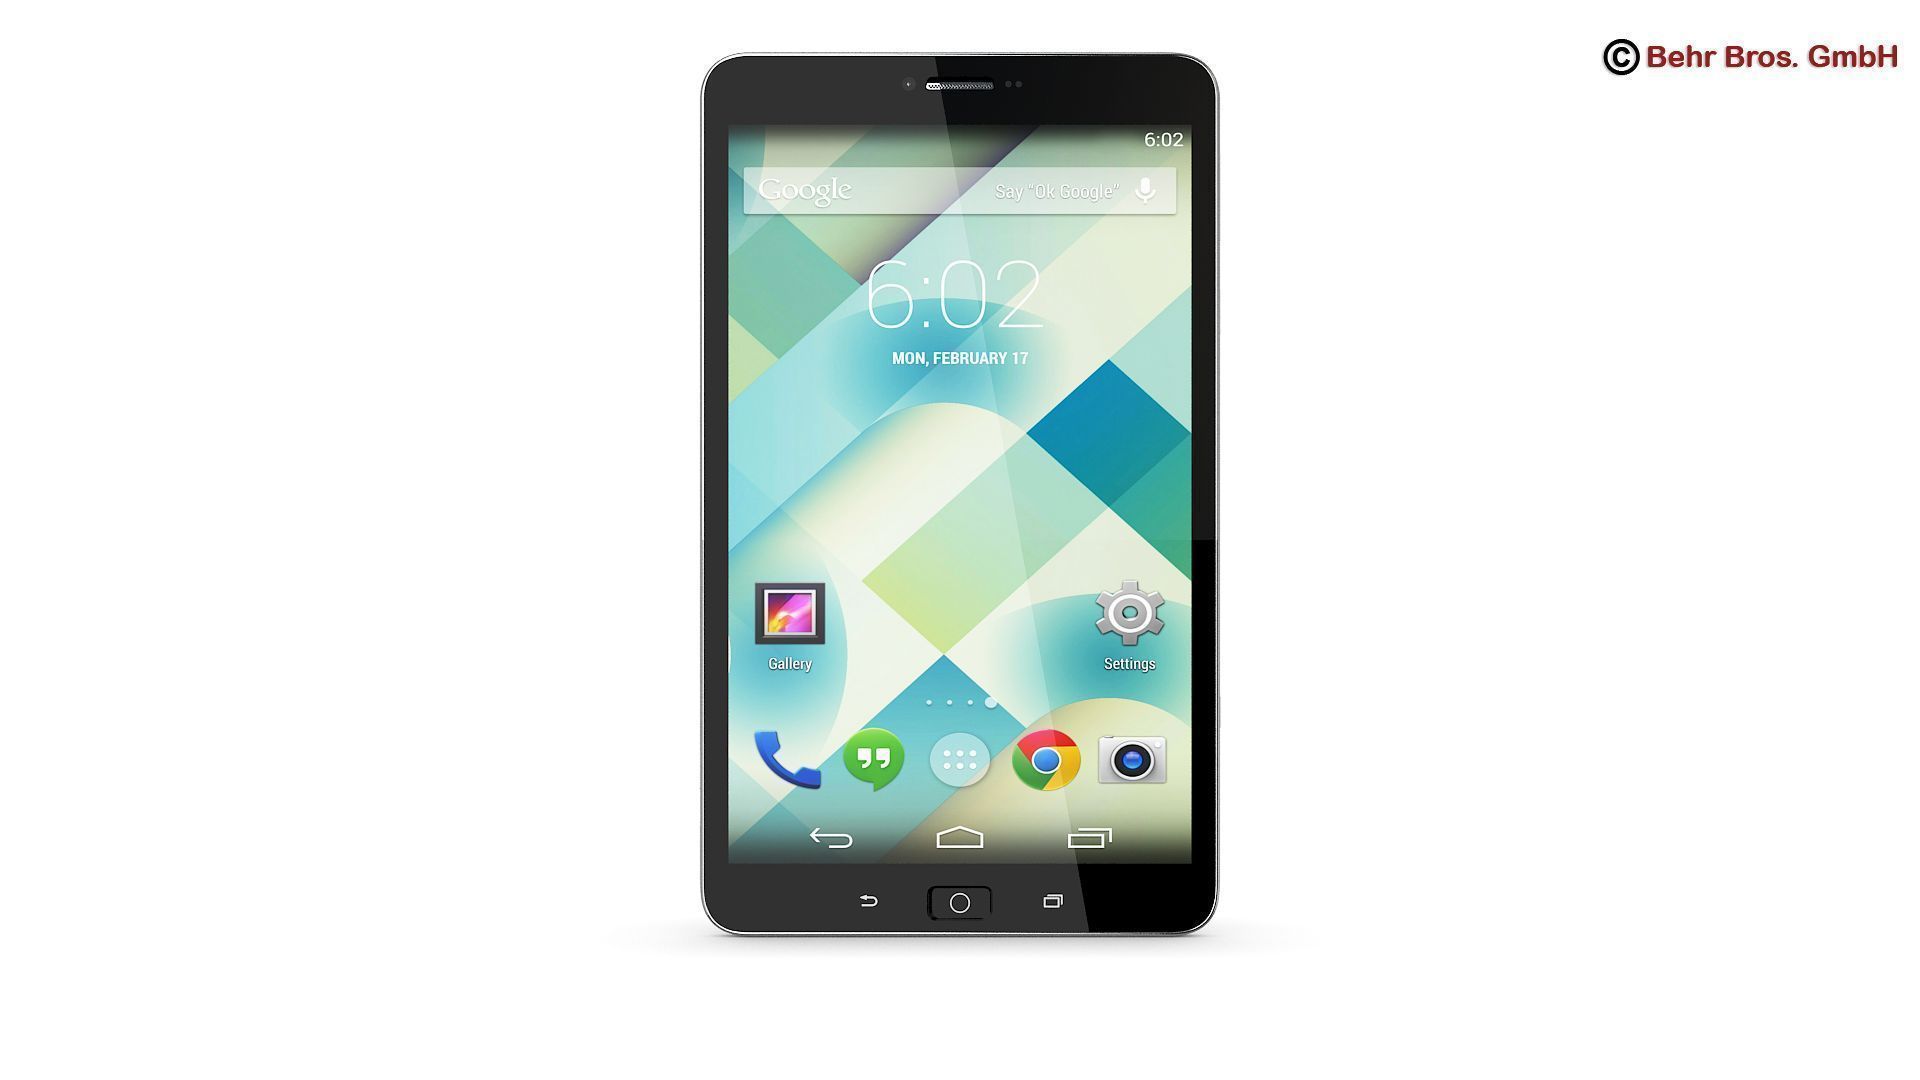 7 zoll tablet wallpaper größe,mobiltelefon,gadget,kommunikationsgerät,tragbares kommunikationsgerät,smartphone